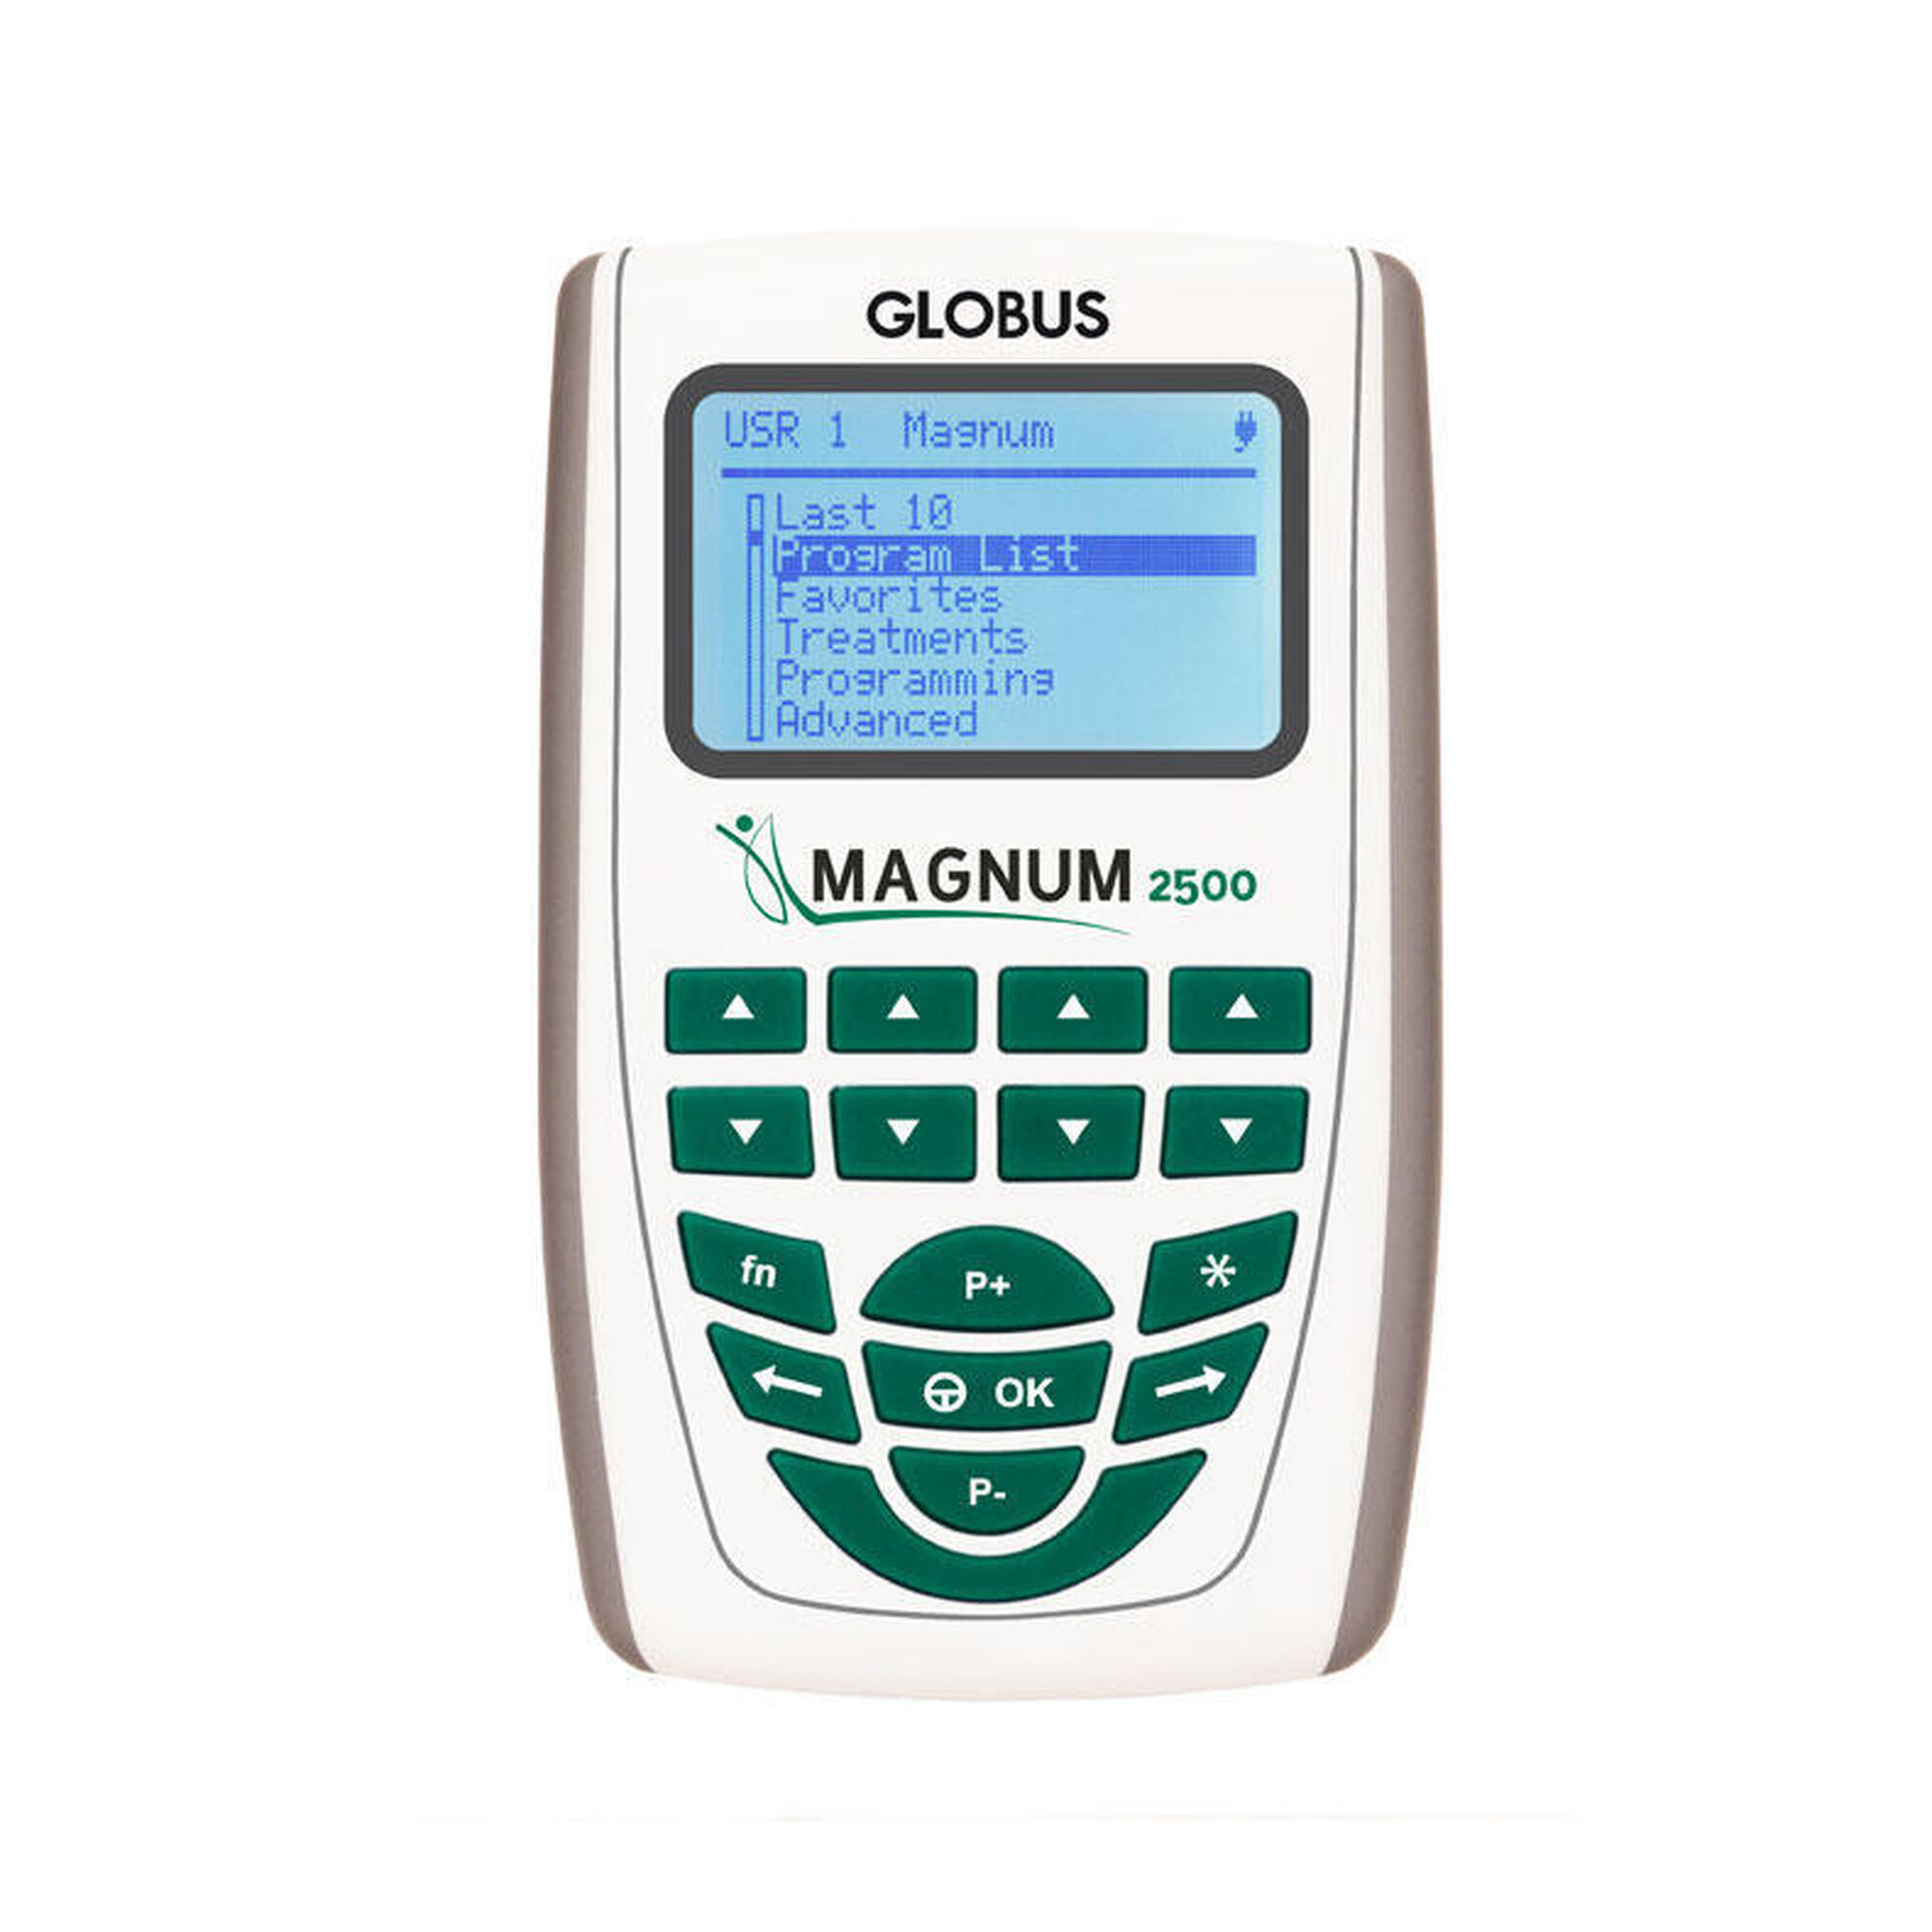 Magnetoterapia Globus Magnum 2500 Pocket Pro Solenoids